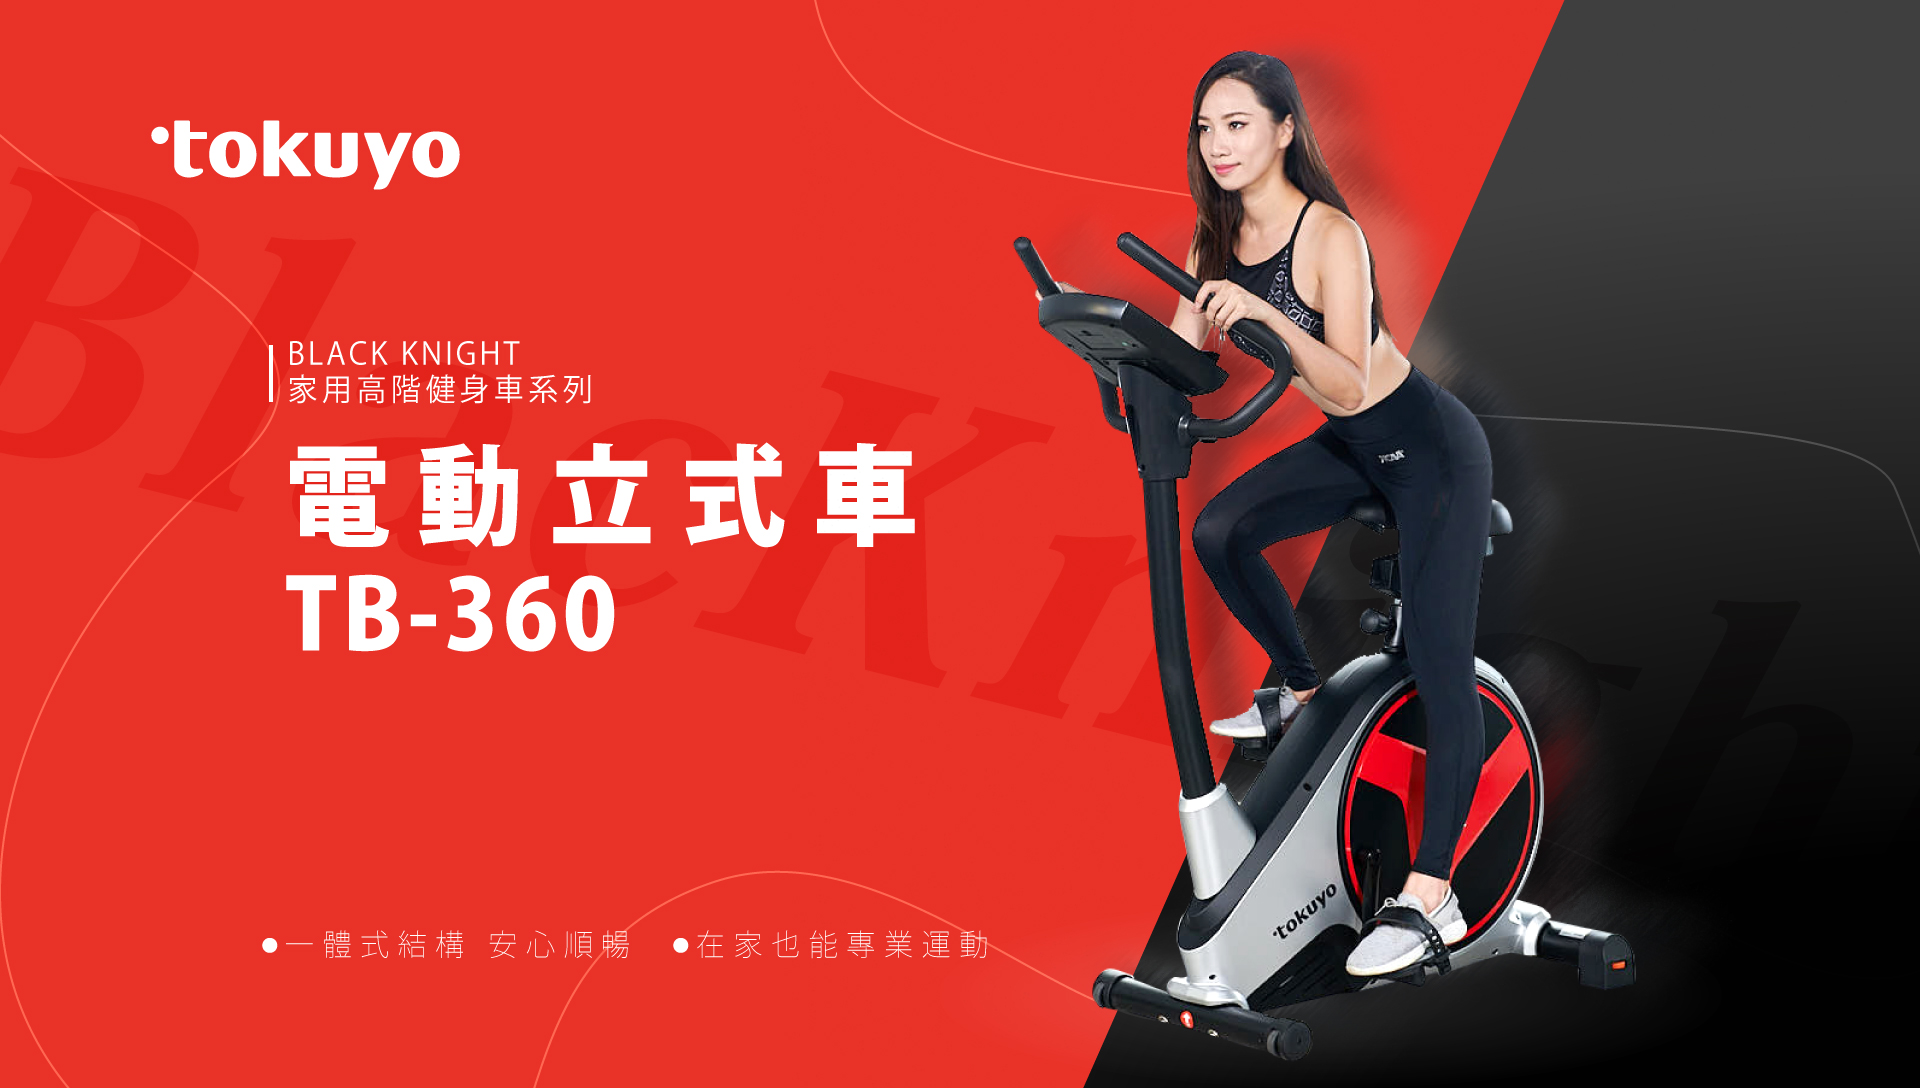 【高階健身車系列】tokuyo 黑騎士電動立式健身車 TB-360(TW)